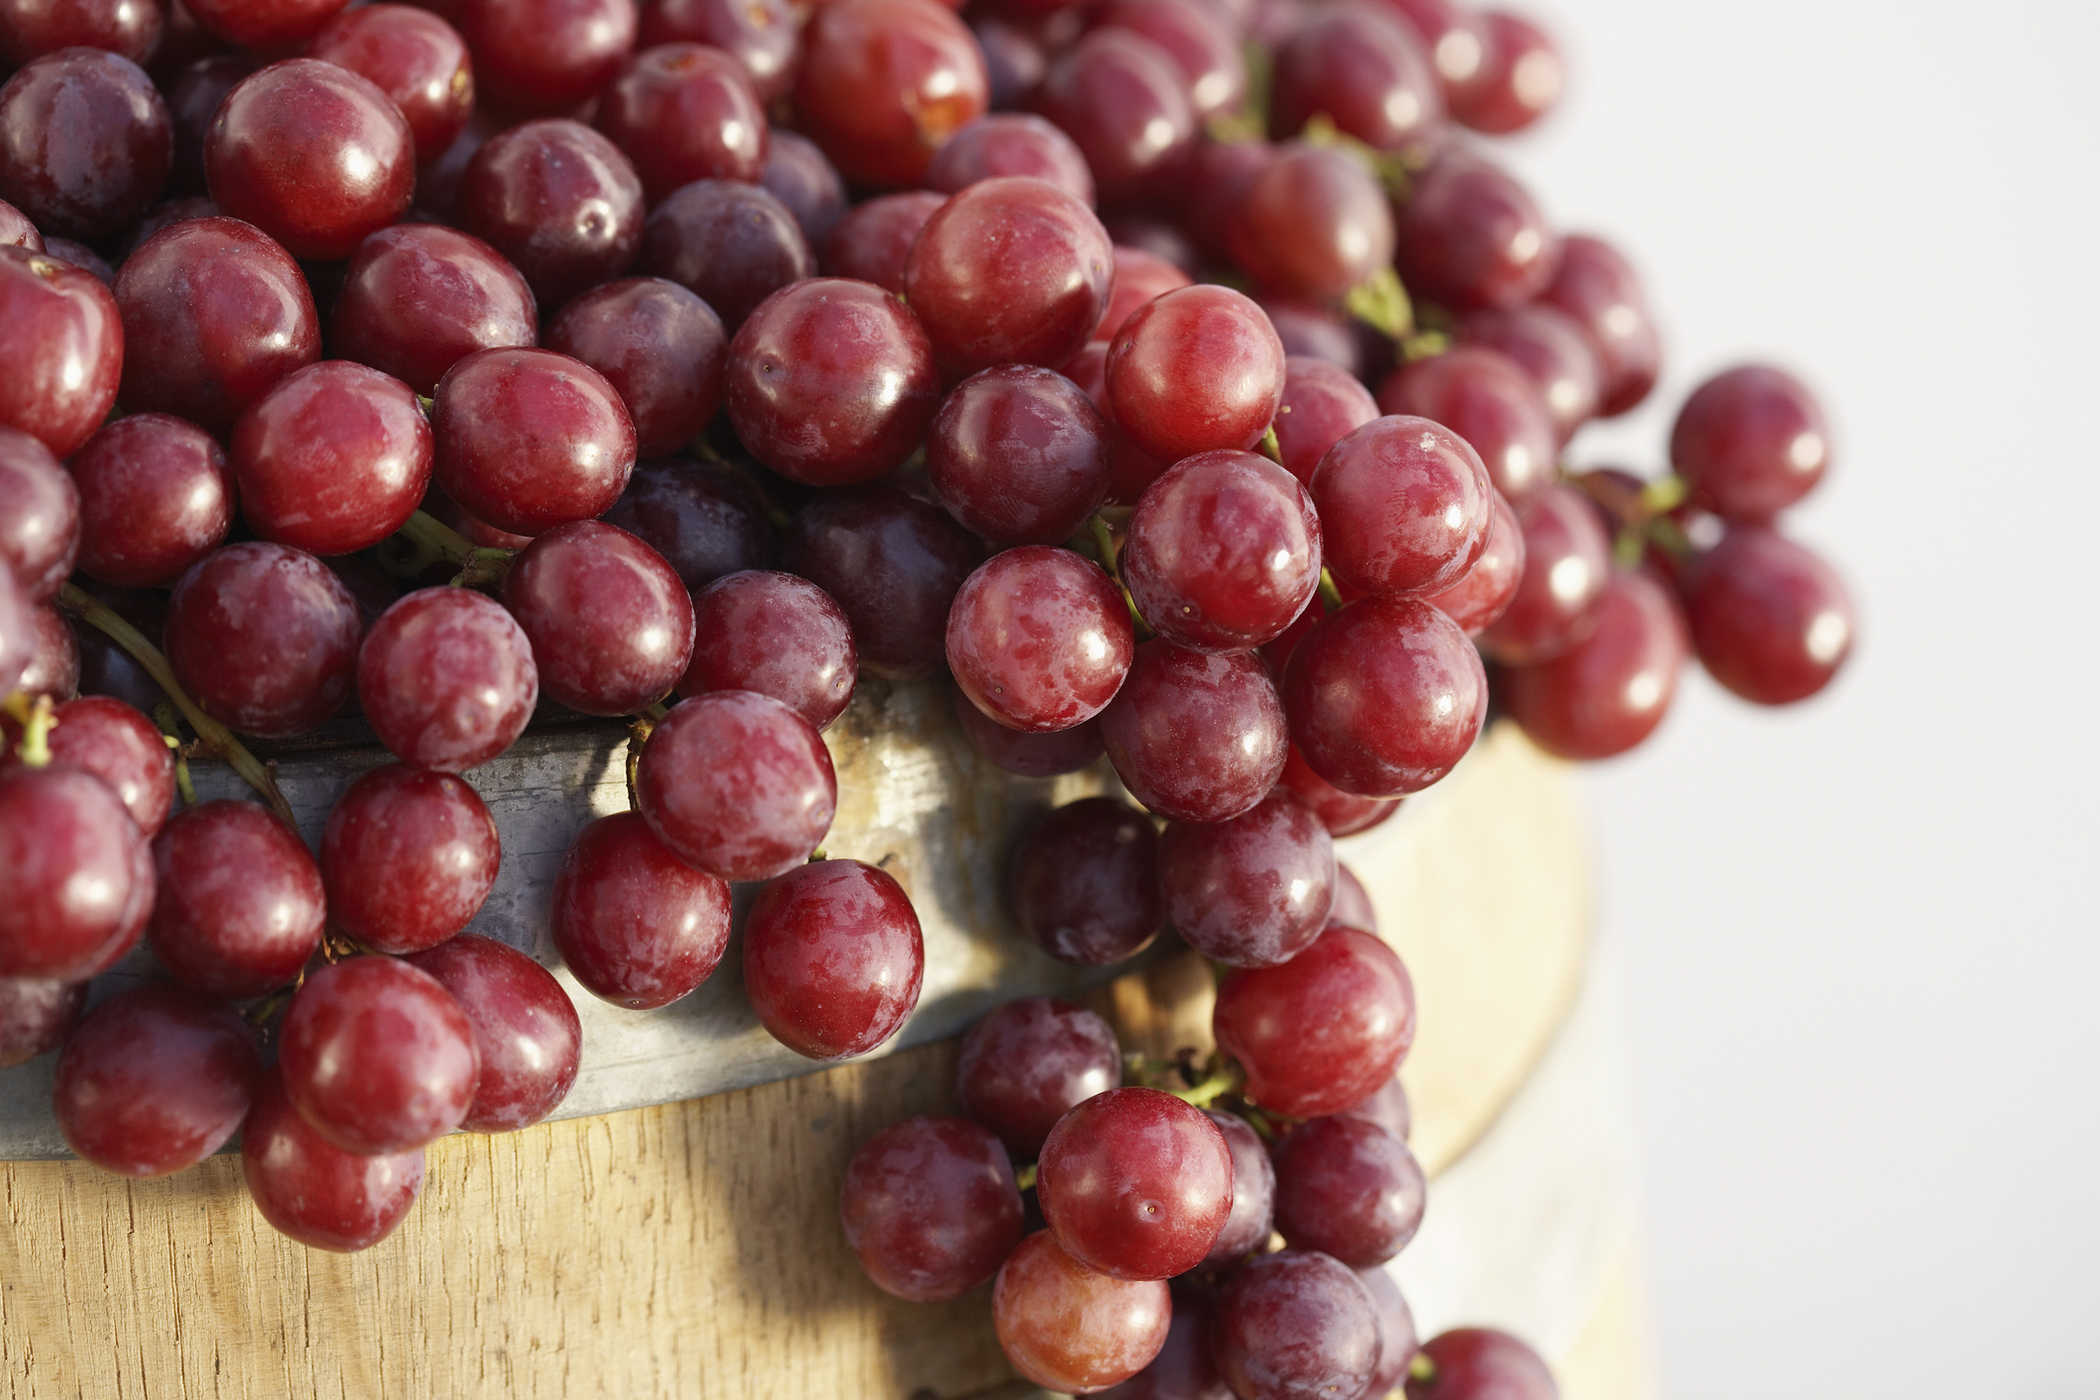 8 יתרונות של ענבים לבריאות, אחד מהם עוזר לרדת במשקל